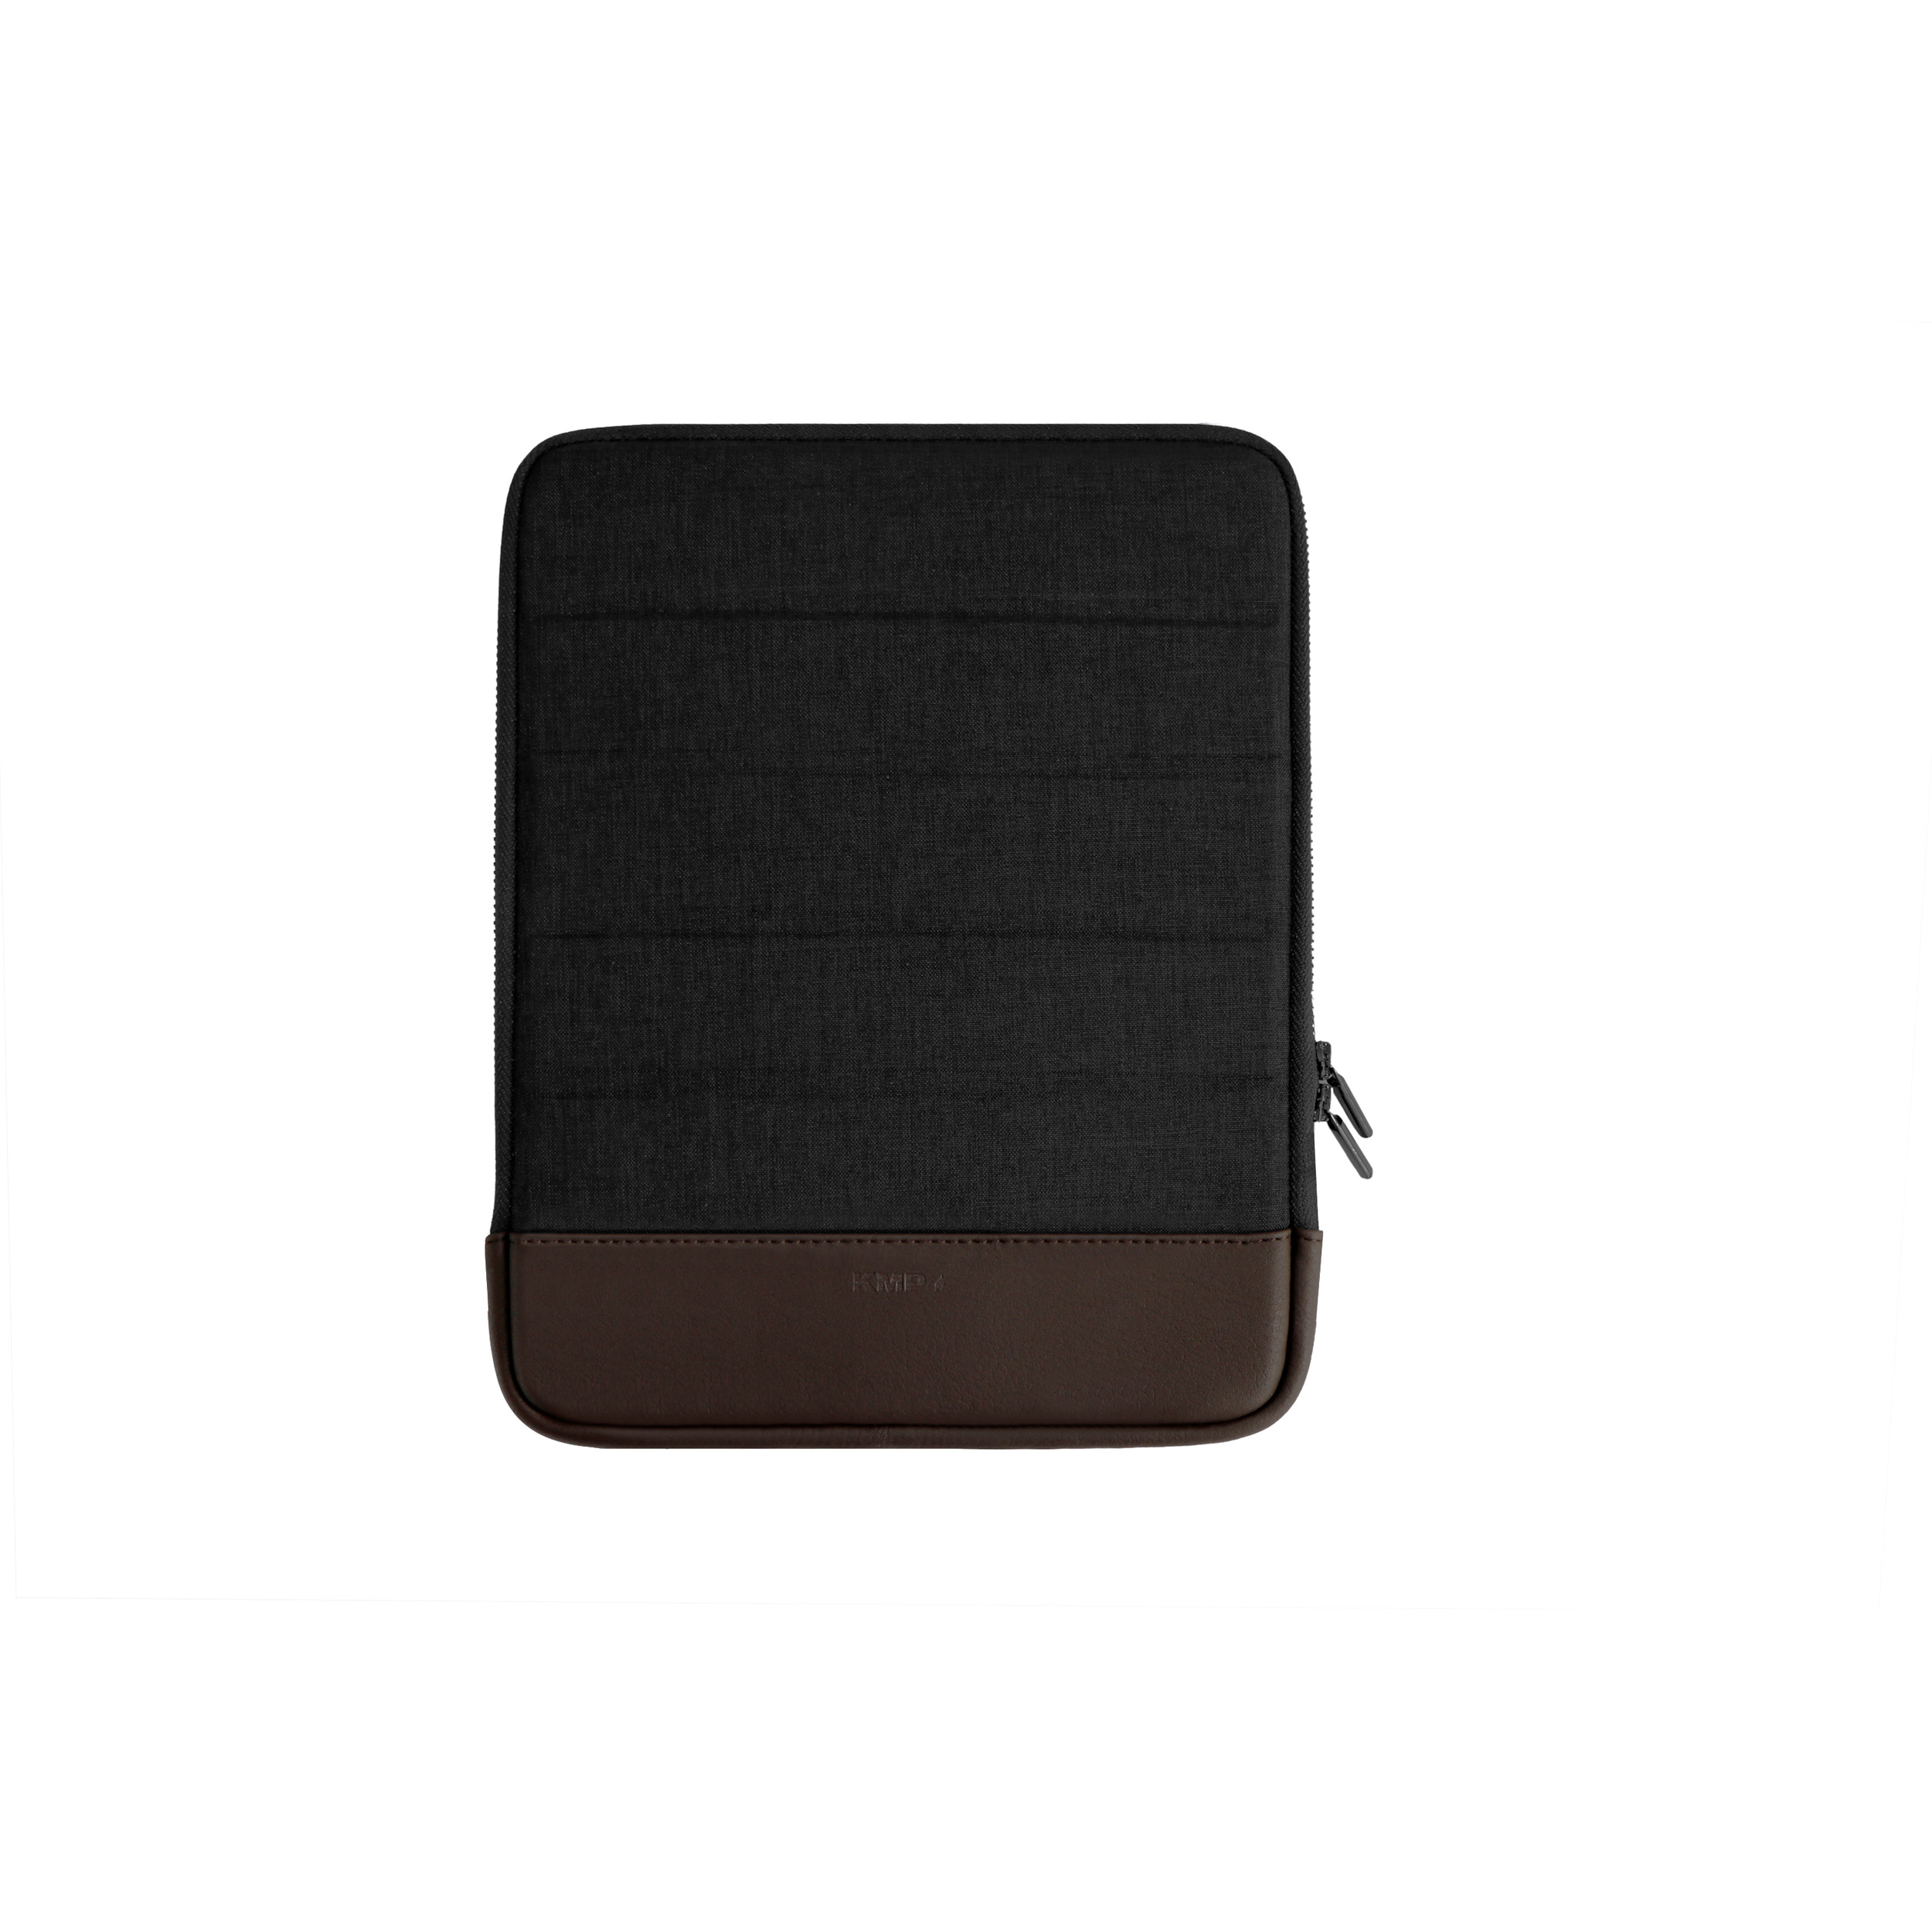 KMP Sleeve für iPad Air/2, anthracite-brown Material für Textil, 9,7 Pro Apple in Gen., 5/6 Sleeve Lederoptik, 10,5/11 Notebook biobasiertes Sleeve Anthracite/Brown